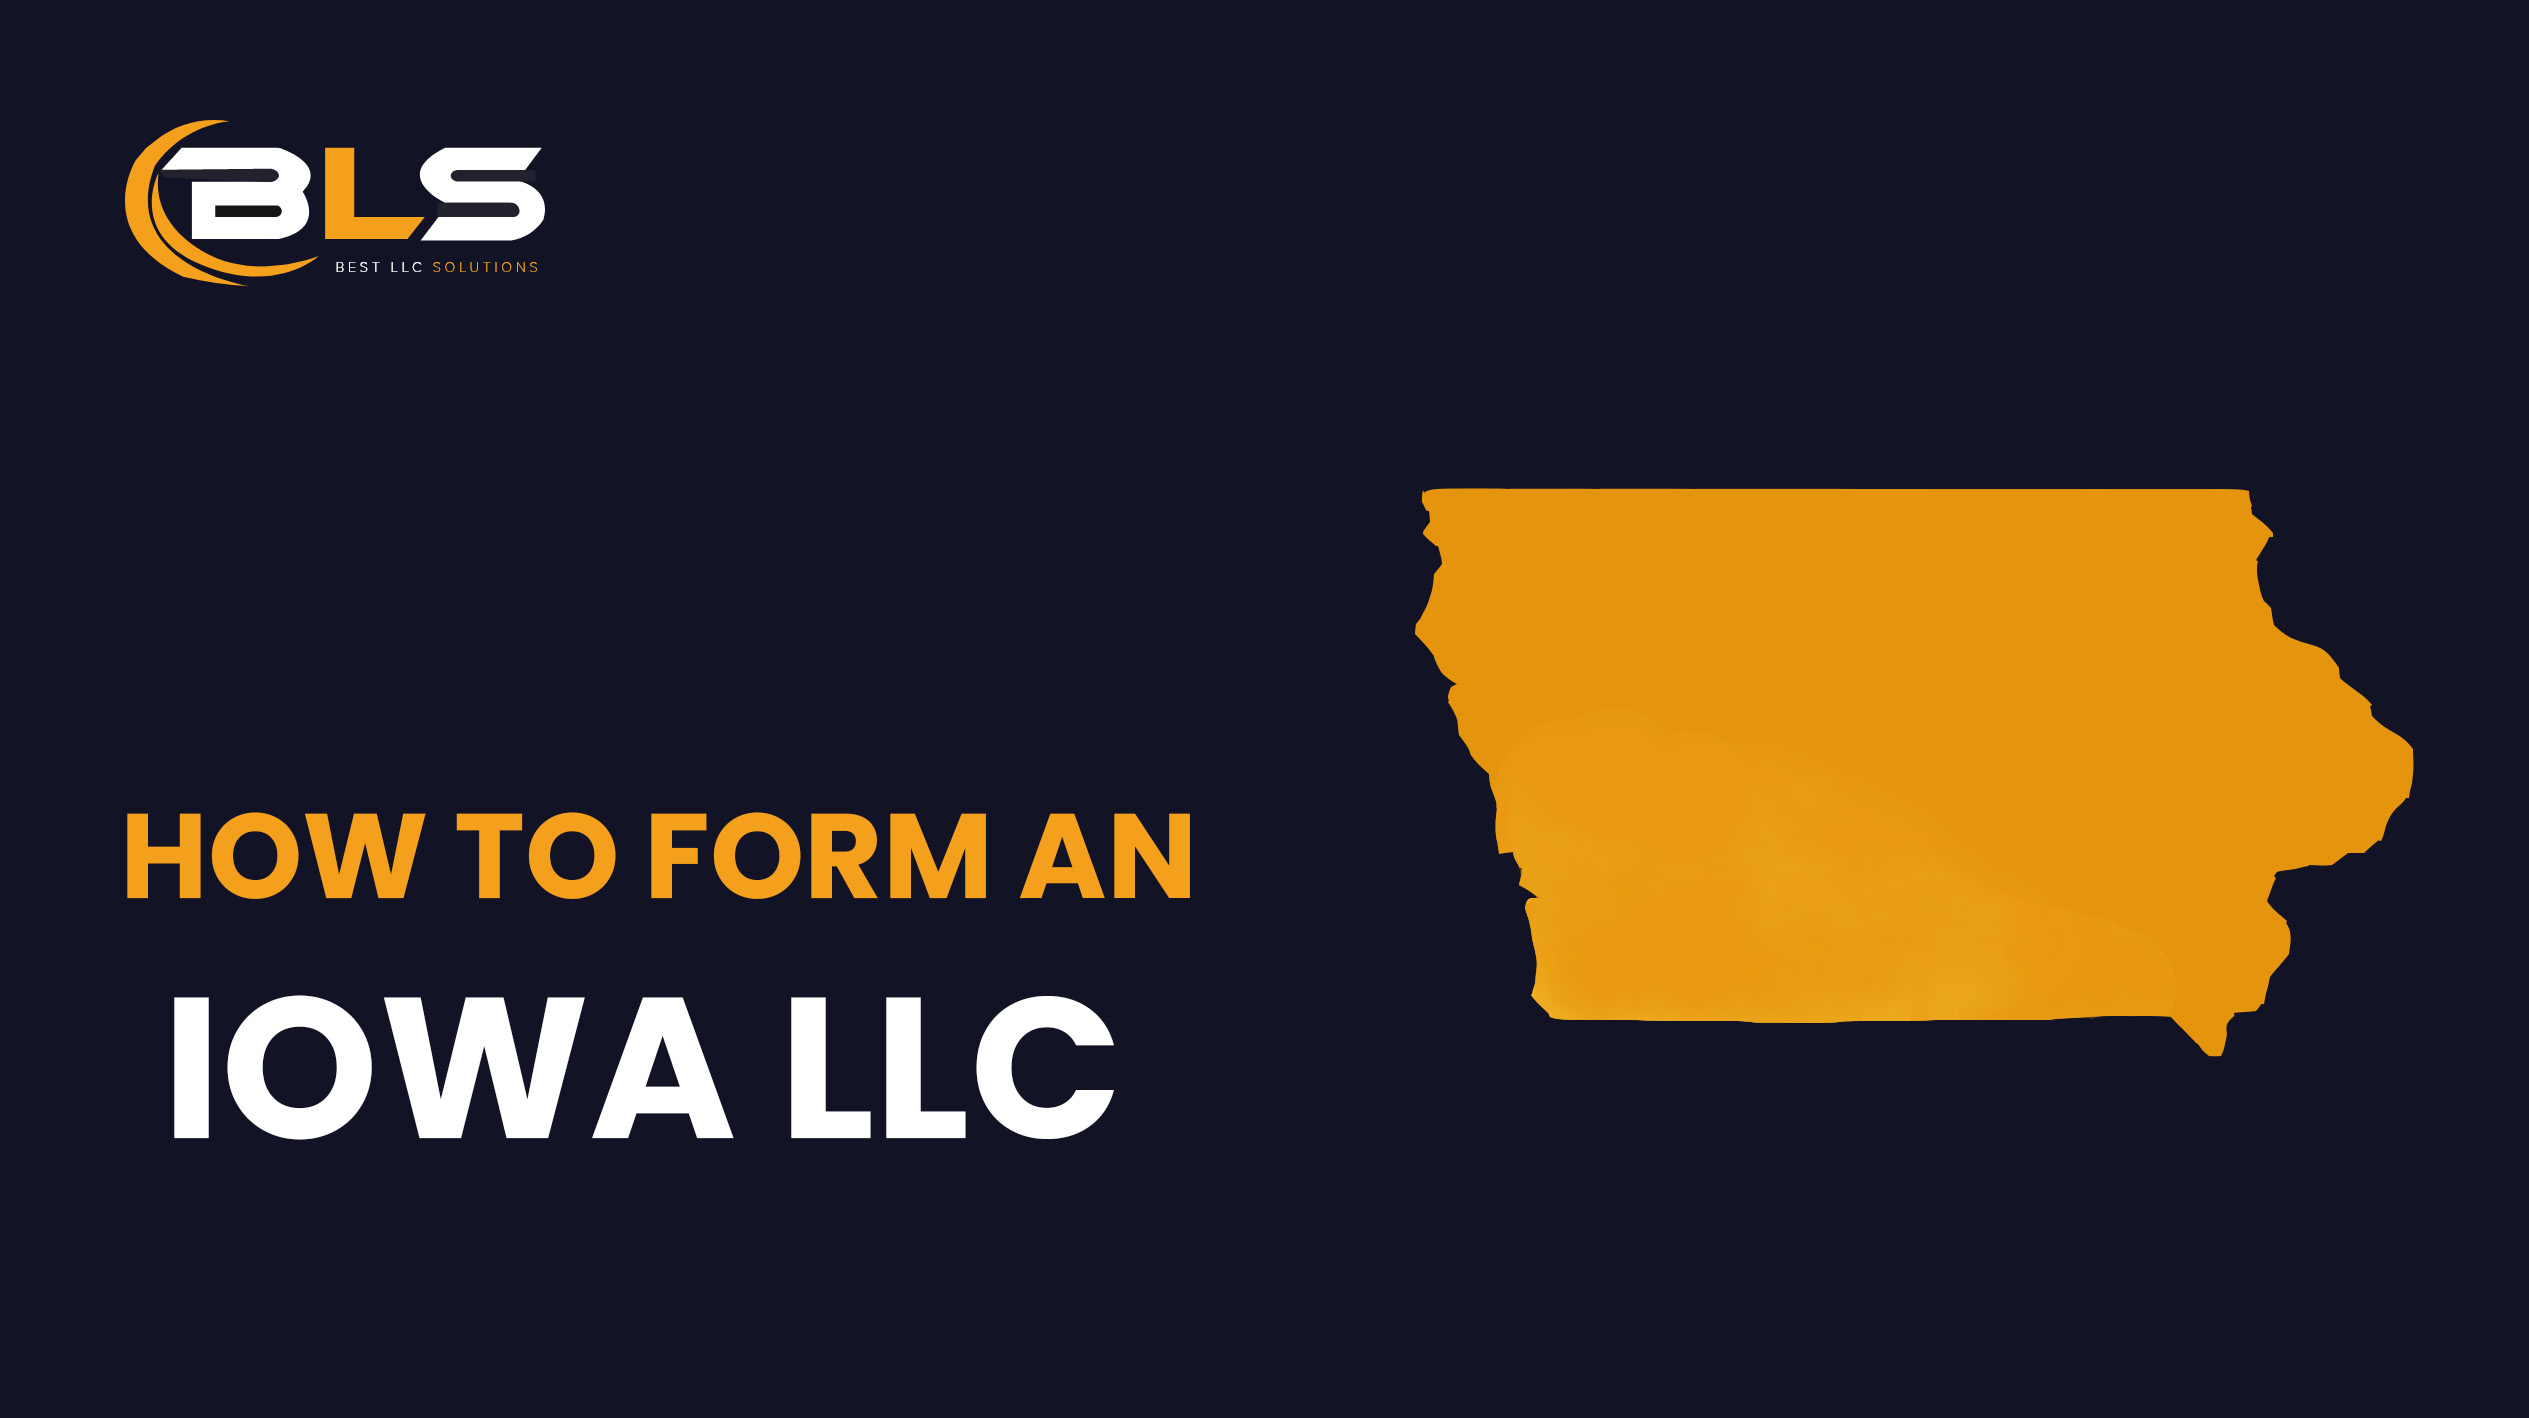 Iowa LLC